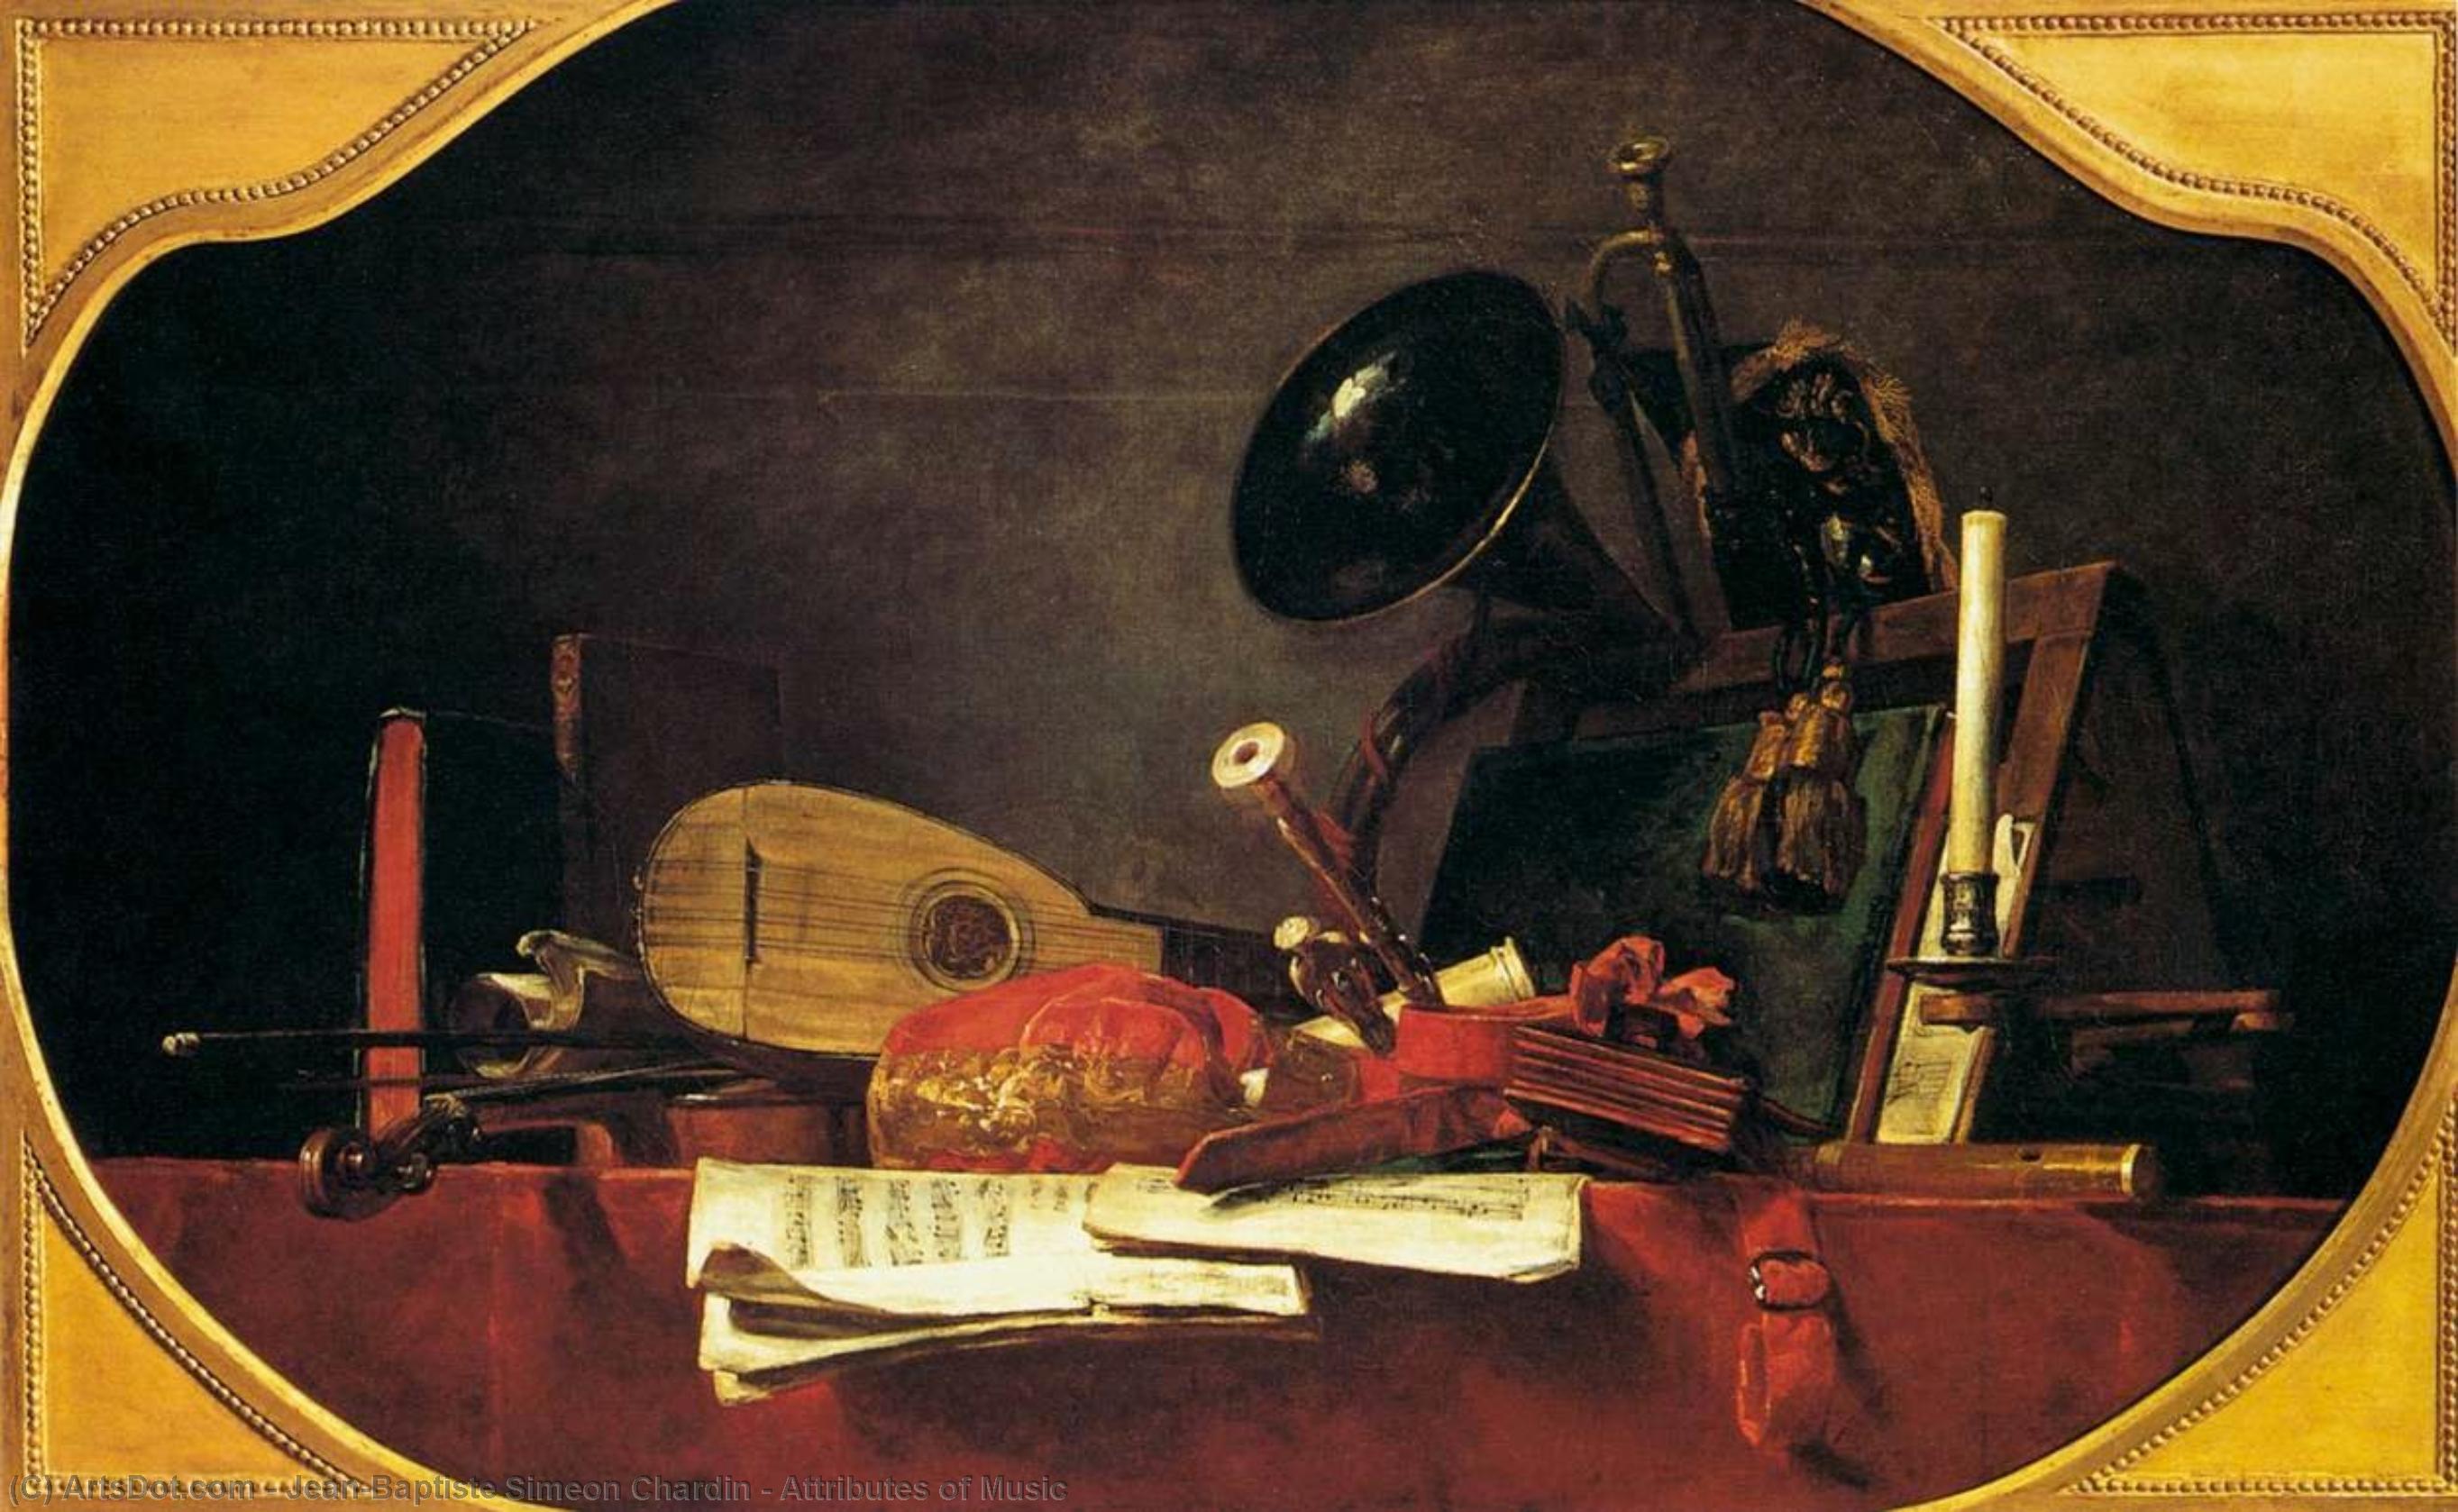 WikiOO.org - Енциклопедия за изящни изкуства - Живопис, Произведения на изкуството Jean-Baptiste Simeon Chardin - Attributes of Music